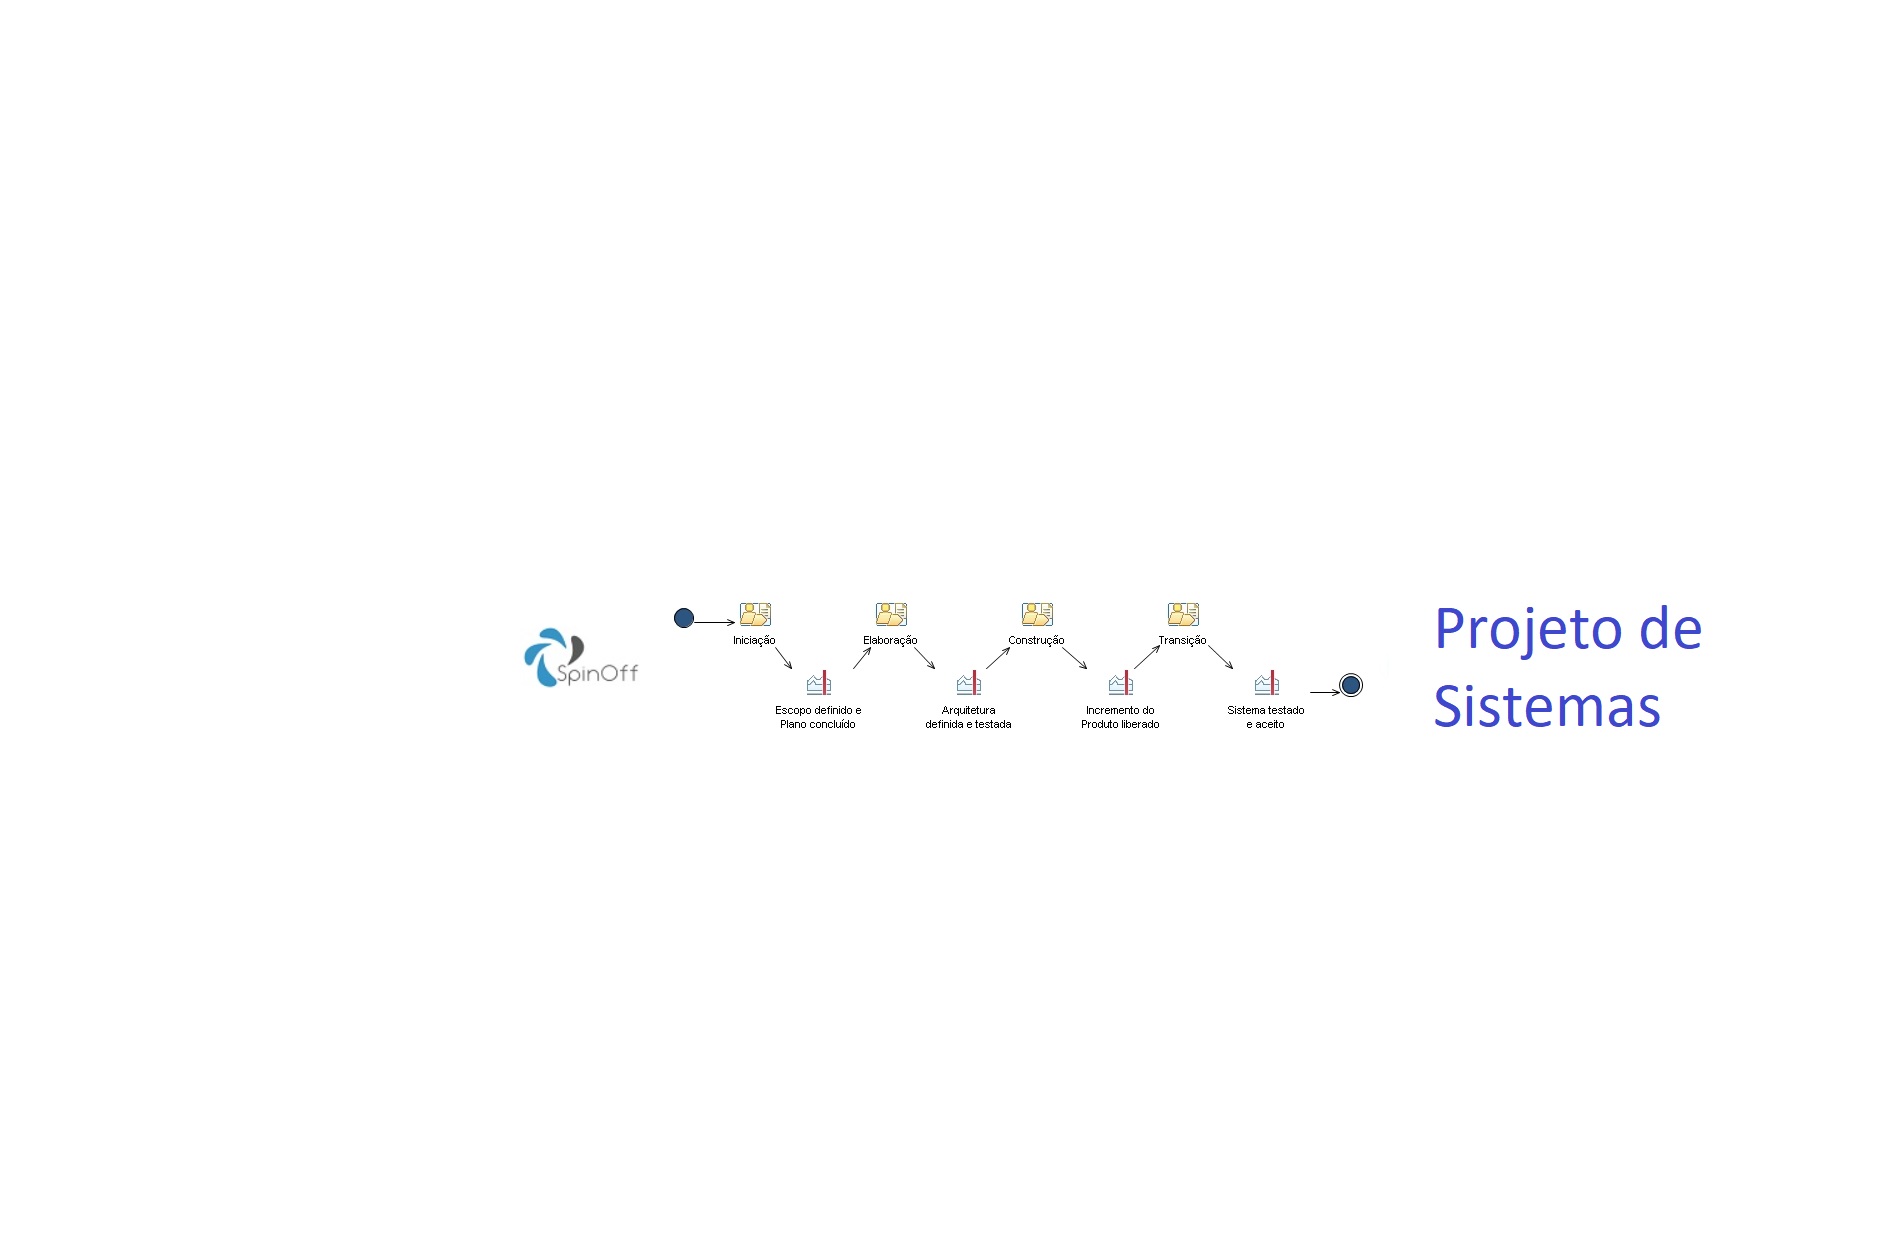 PRJ - Projeto de Sistemas